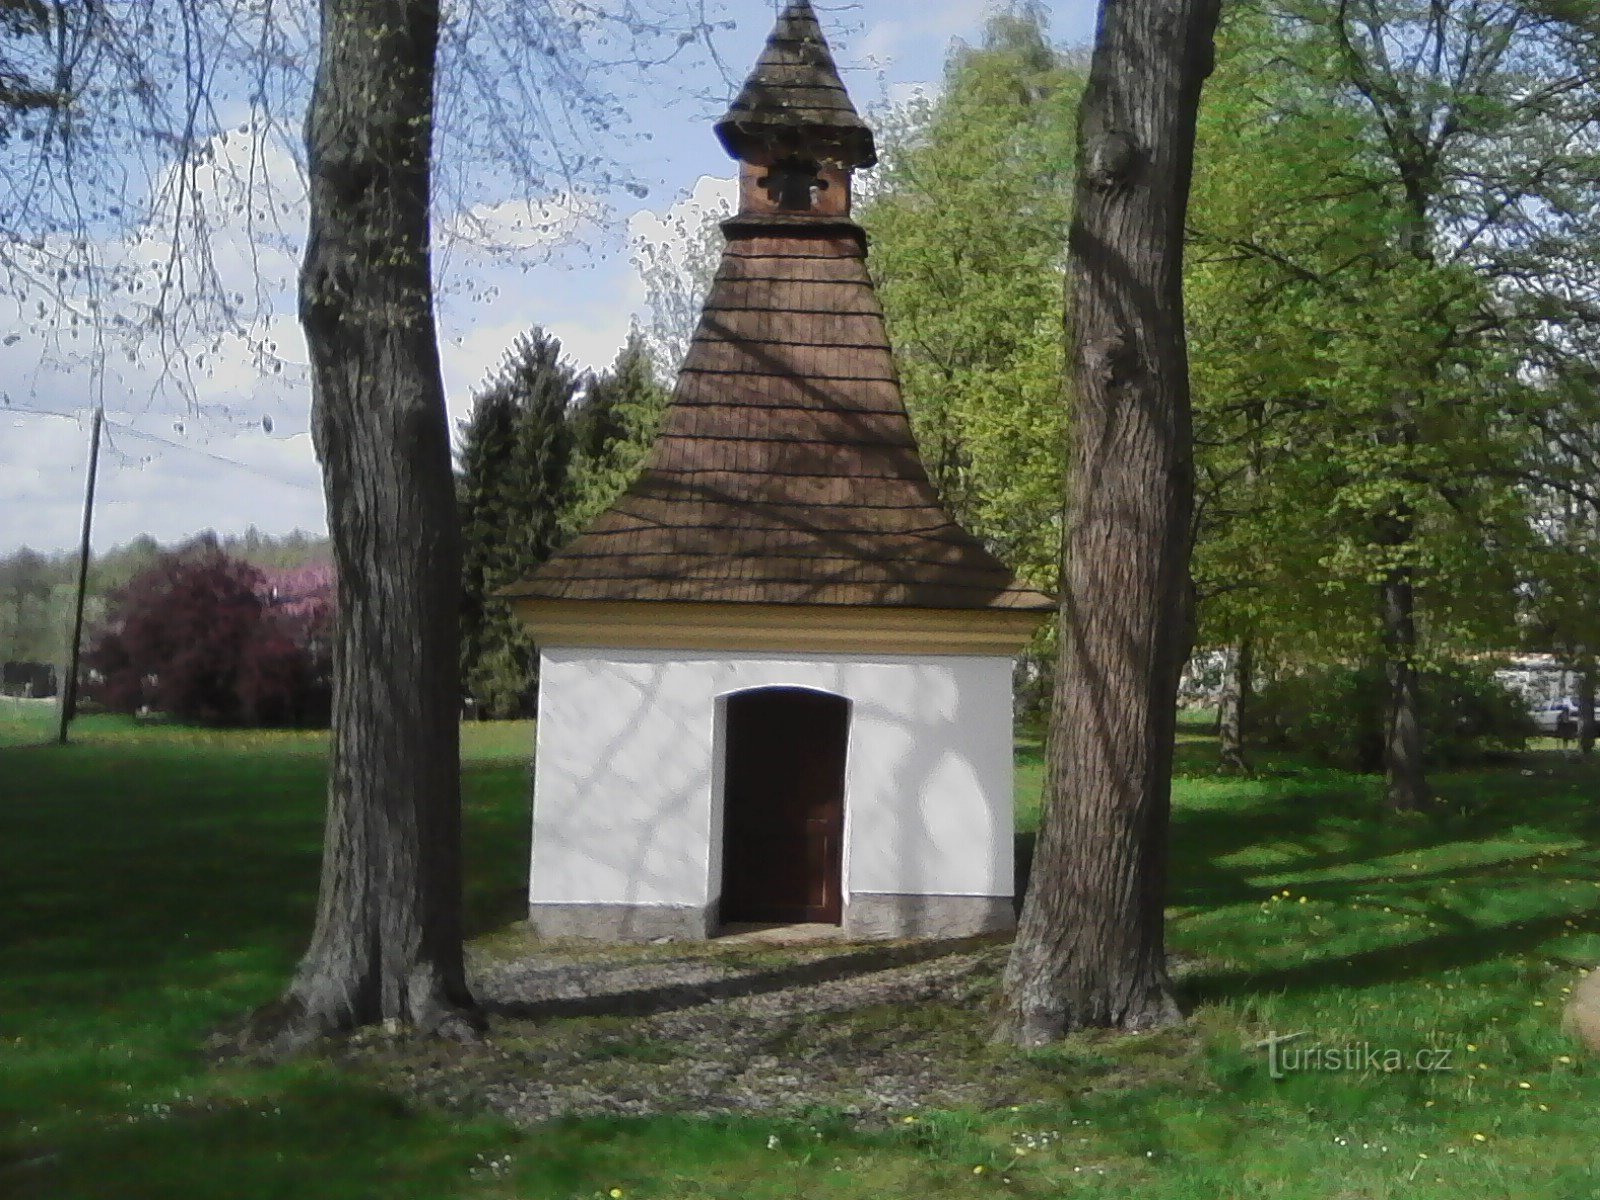 1. Capela Sf. Anna în Leskovice. Prima mențiune scrisă despre existența satului datează din 1379.